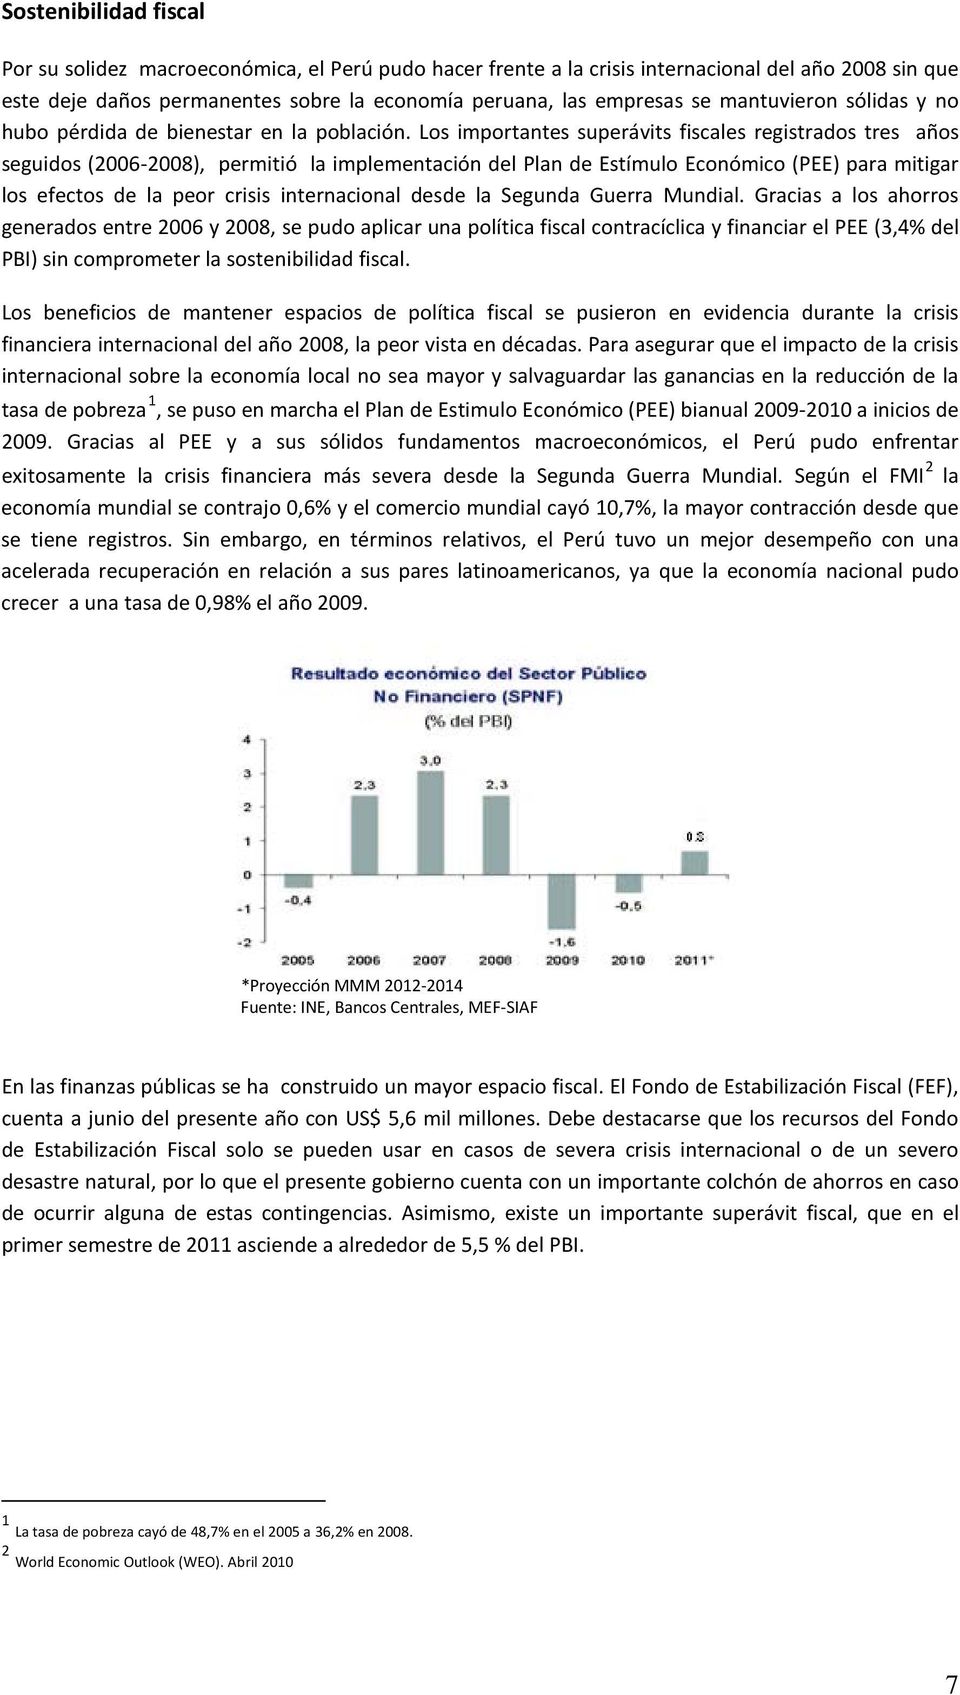 Los importantes superávits fiscales registrados tres años seguidos (2006-2008), permitió la implementación del Plan de Estímulo Económico (PEE) para mitigar los efectos de la peor crisis